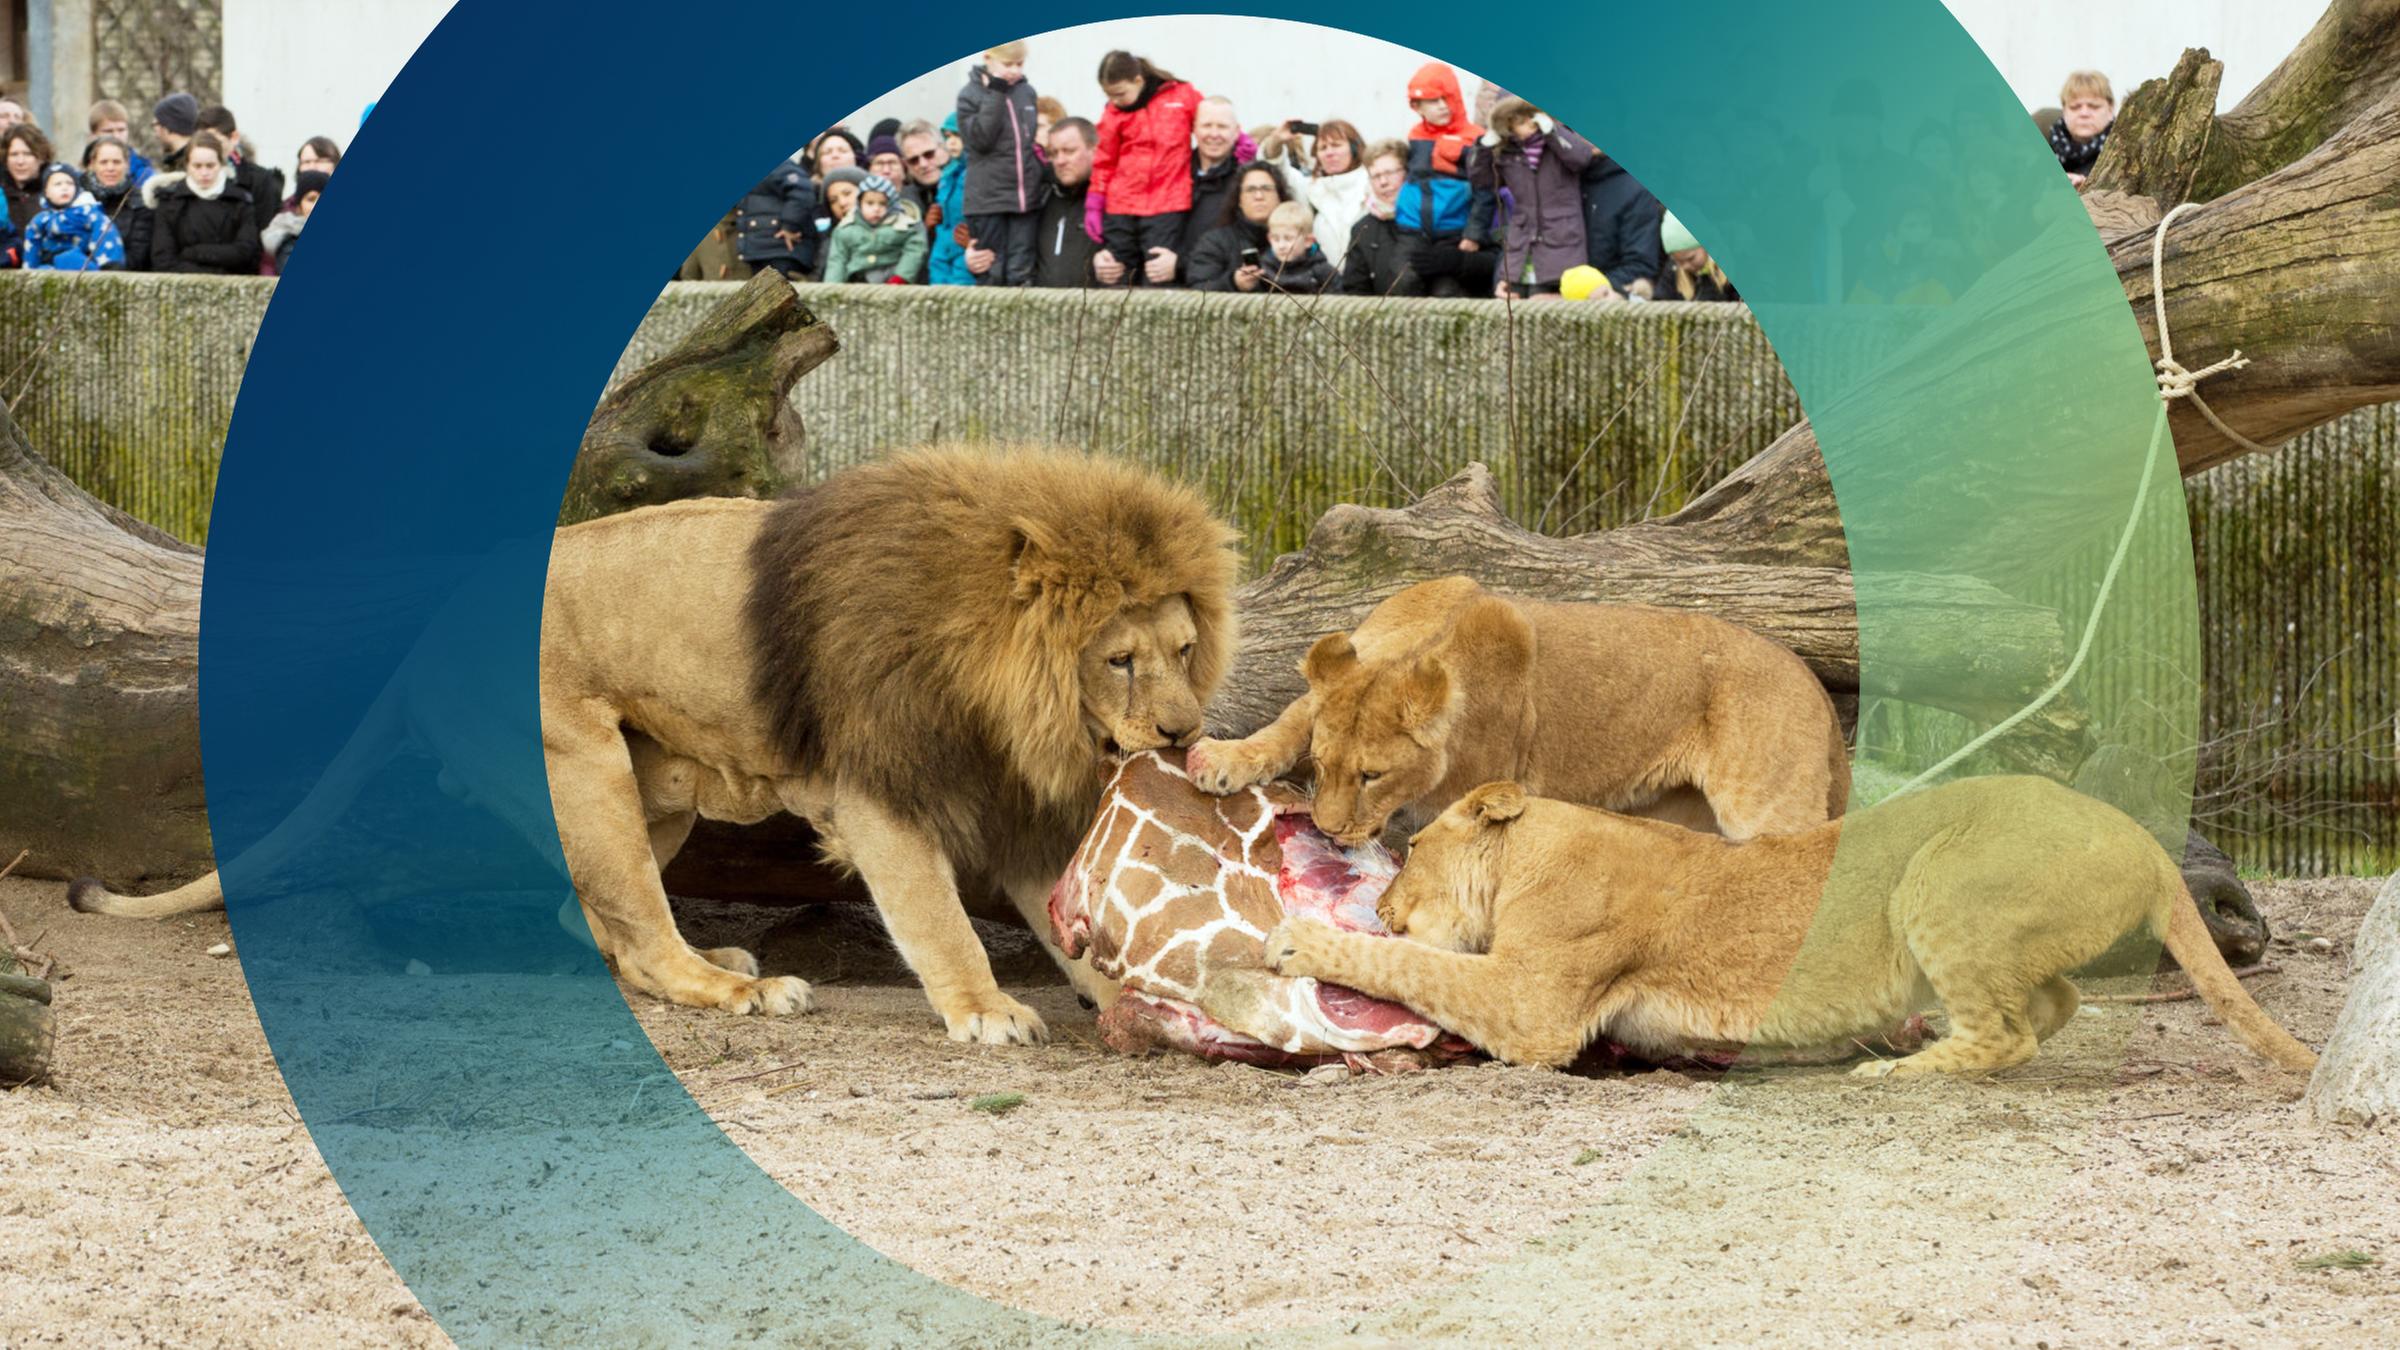 Ein Giraffenbulle wird in einem Gehege an ein Löwenrudel verfüttert.